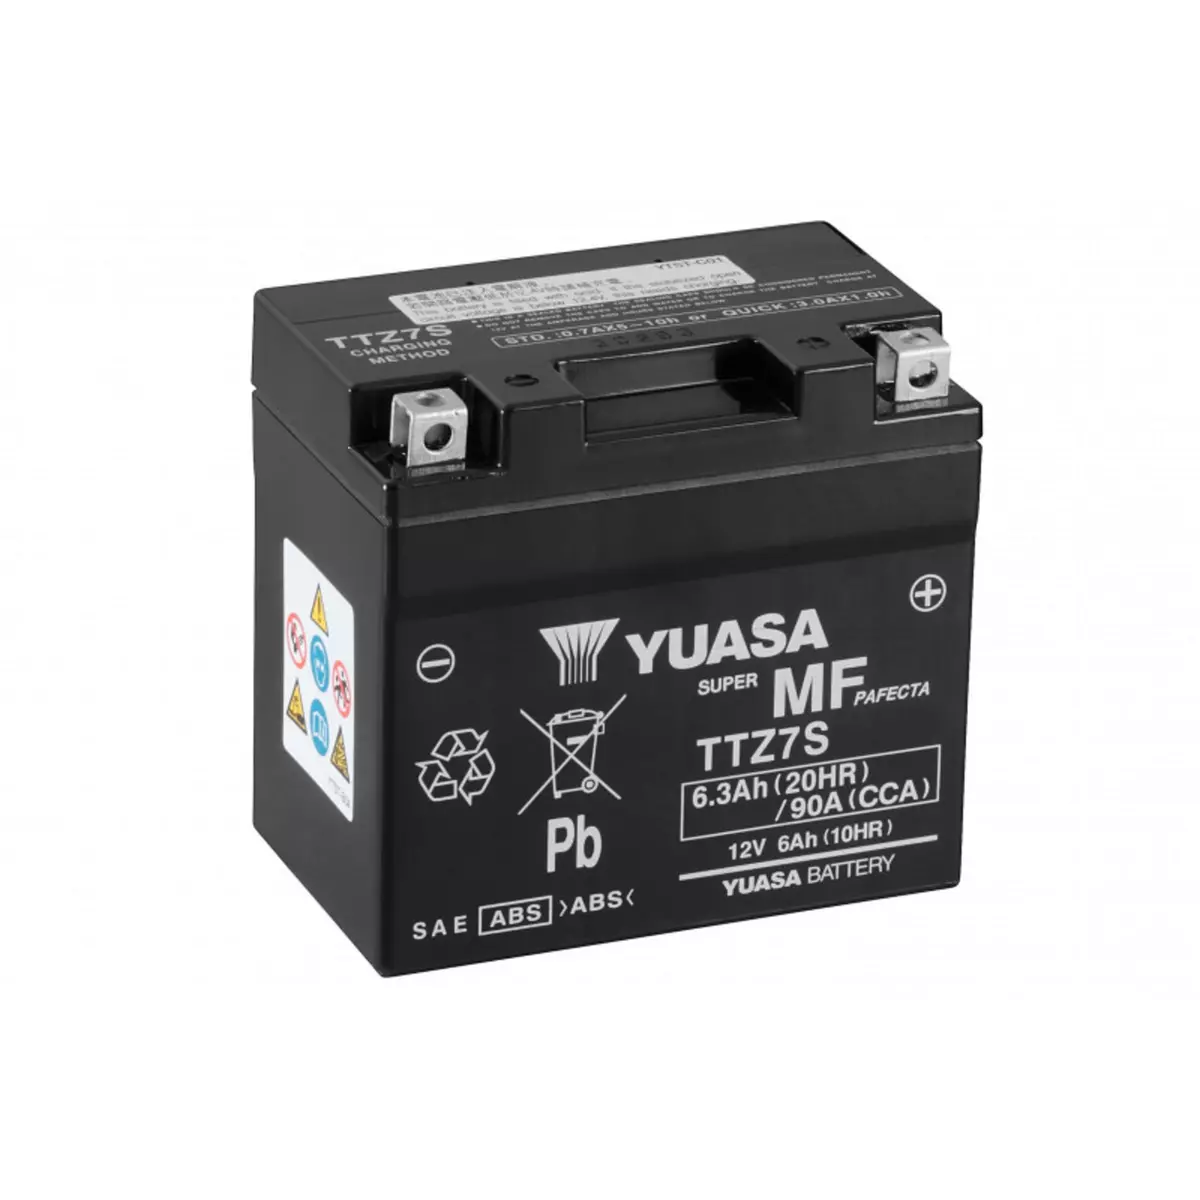 YUASA Batterie moto YUASA TTZ7S 12V 6.3AH 90A